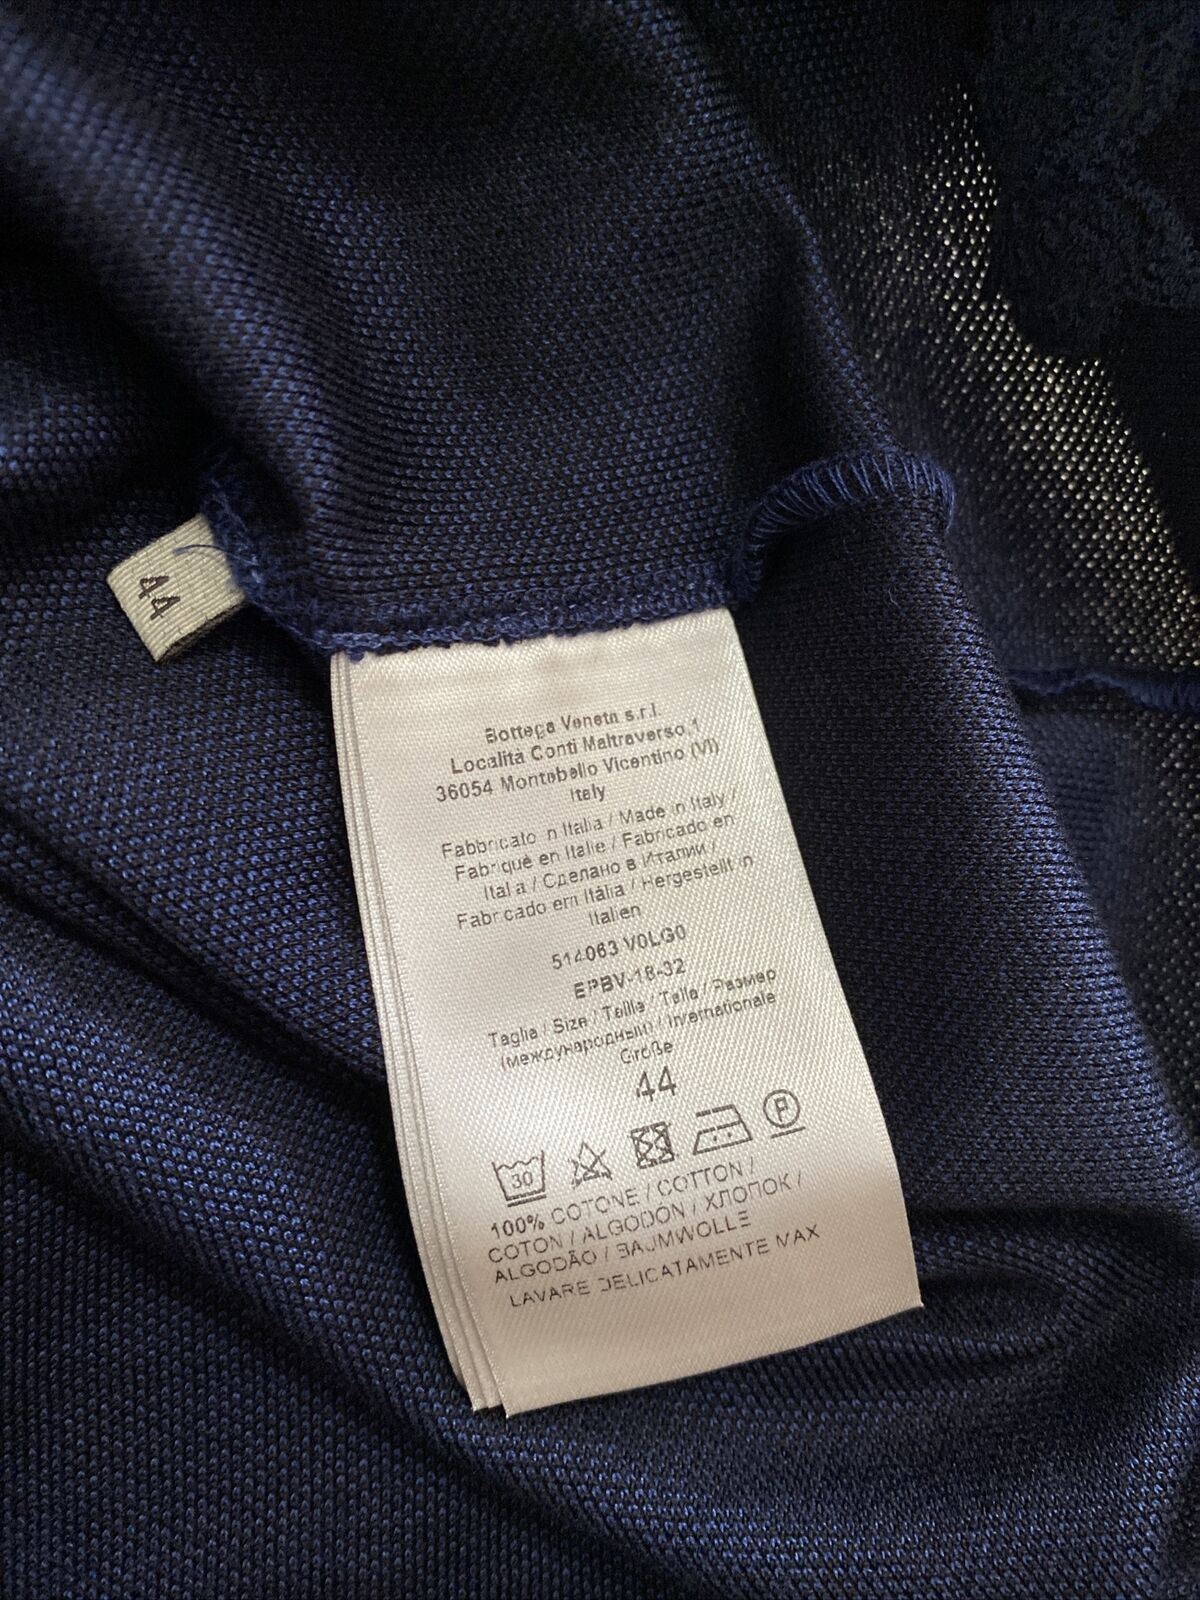 Neu mit Etikett: 390 $ Bottega Veneta Herren-Poloshirt Blau XS US (44 Eu) Italien